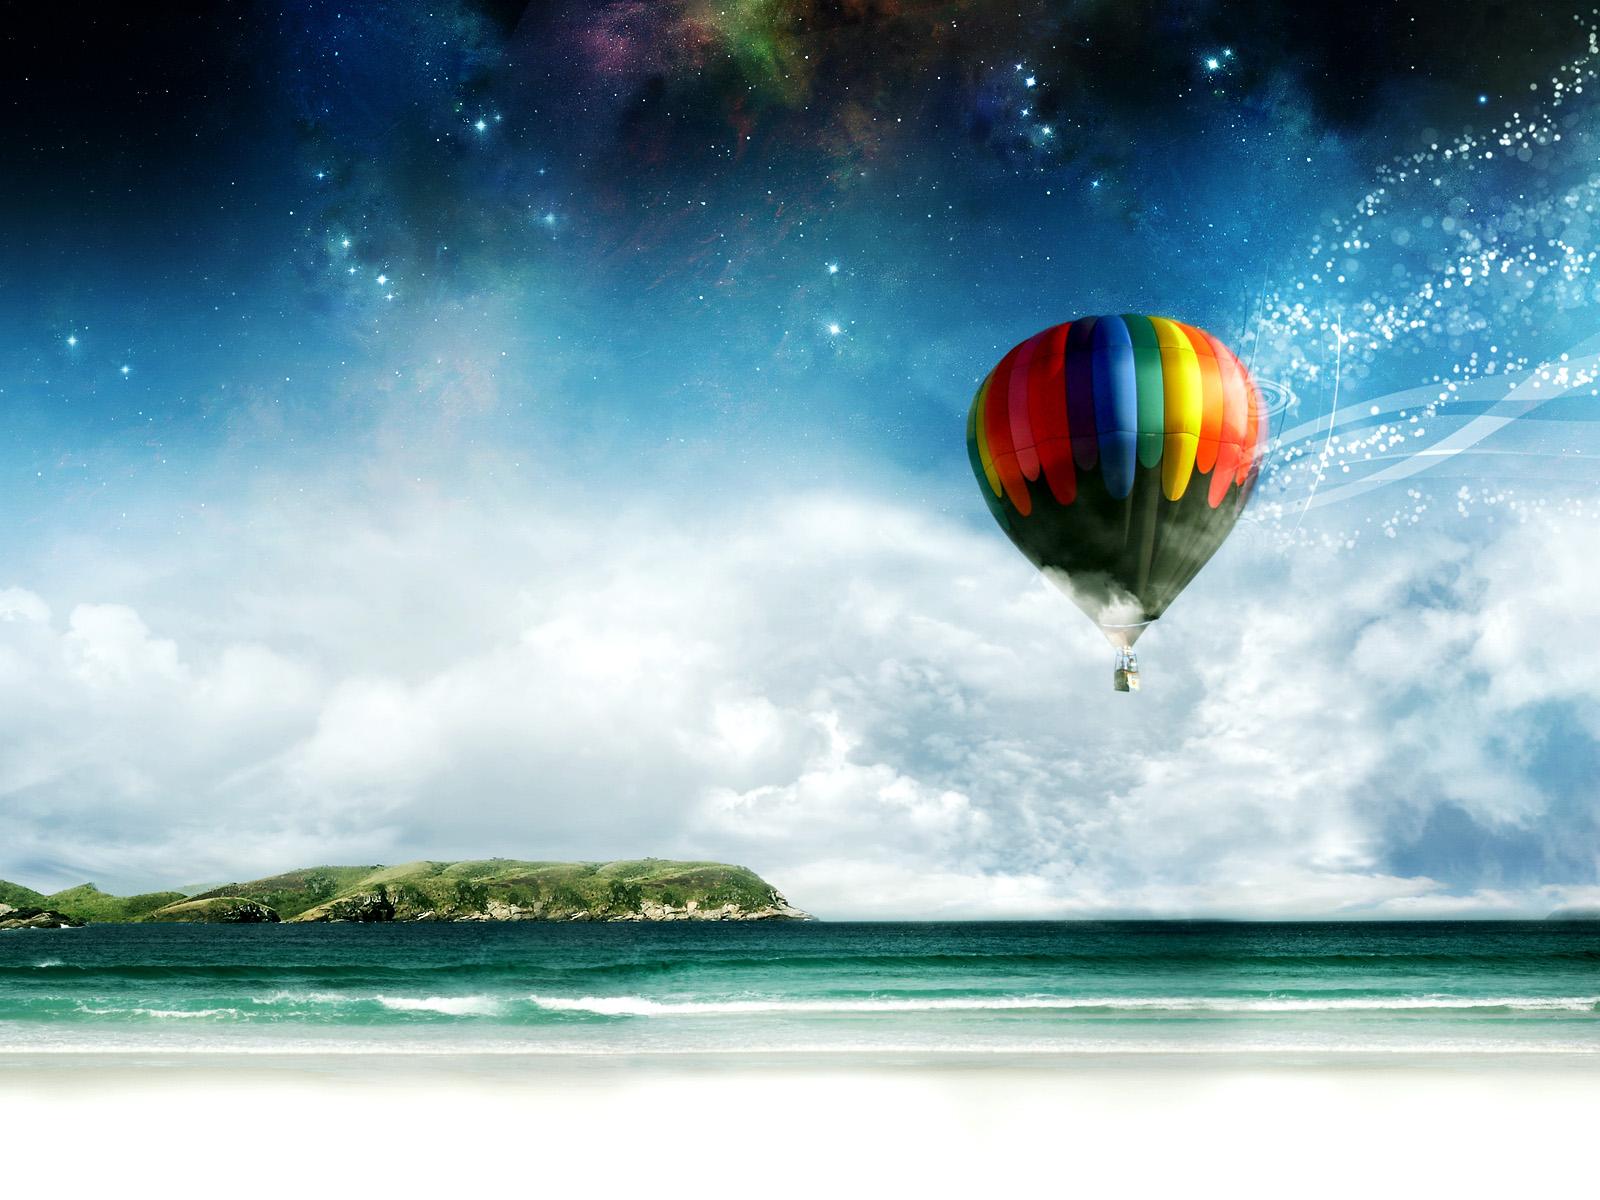 heißes bild hd wallpaper,himmel,heißluftballon,natur,heißluftballon fahren,atmosphäre